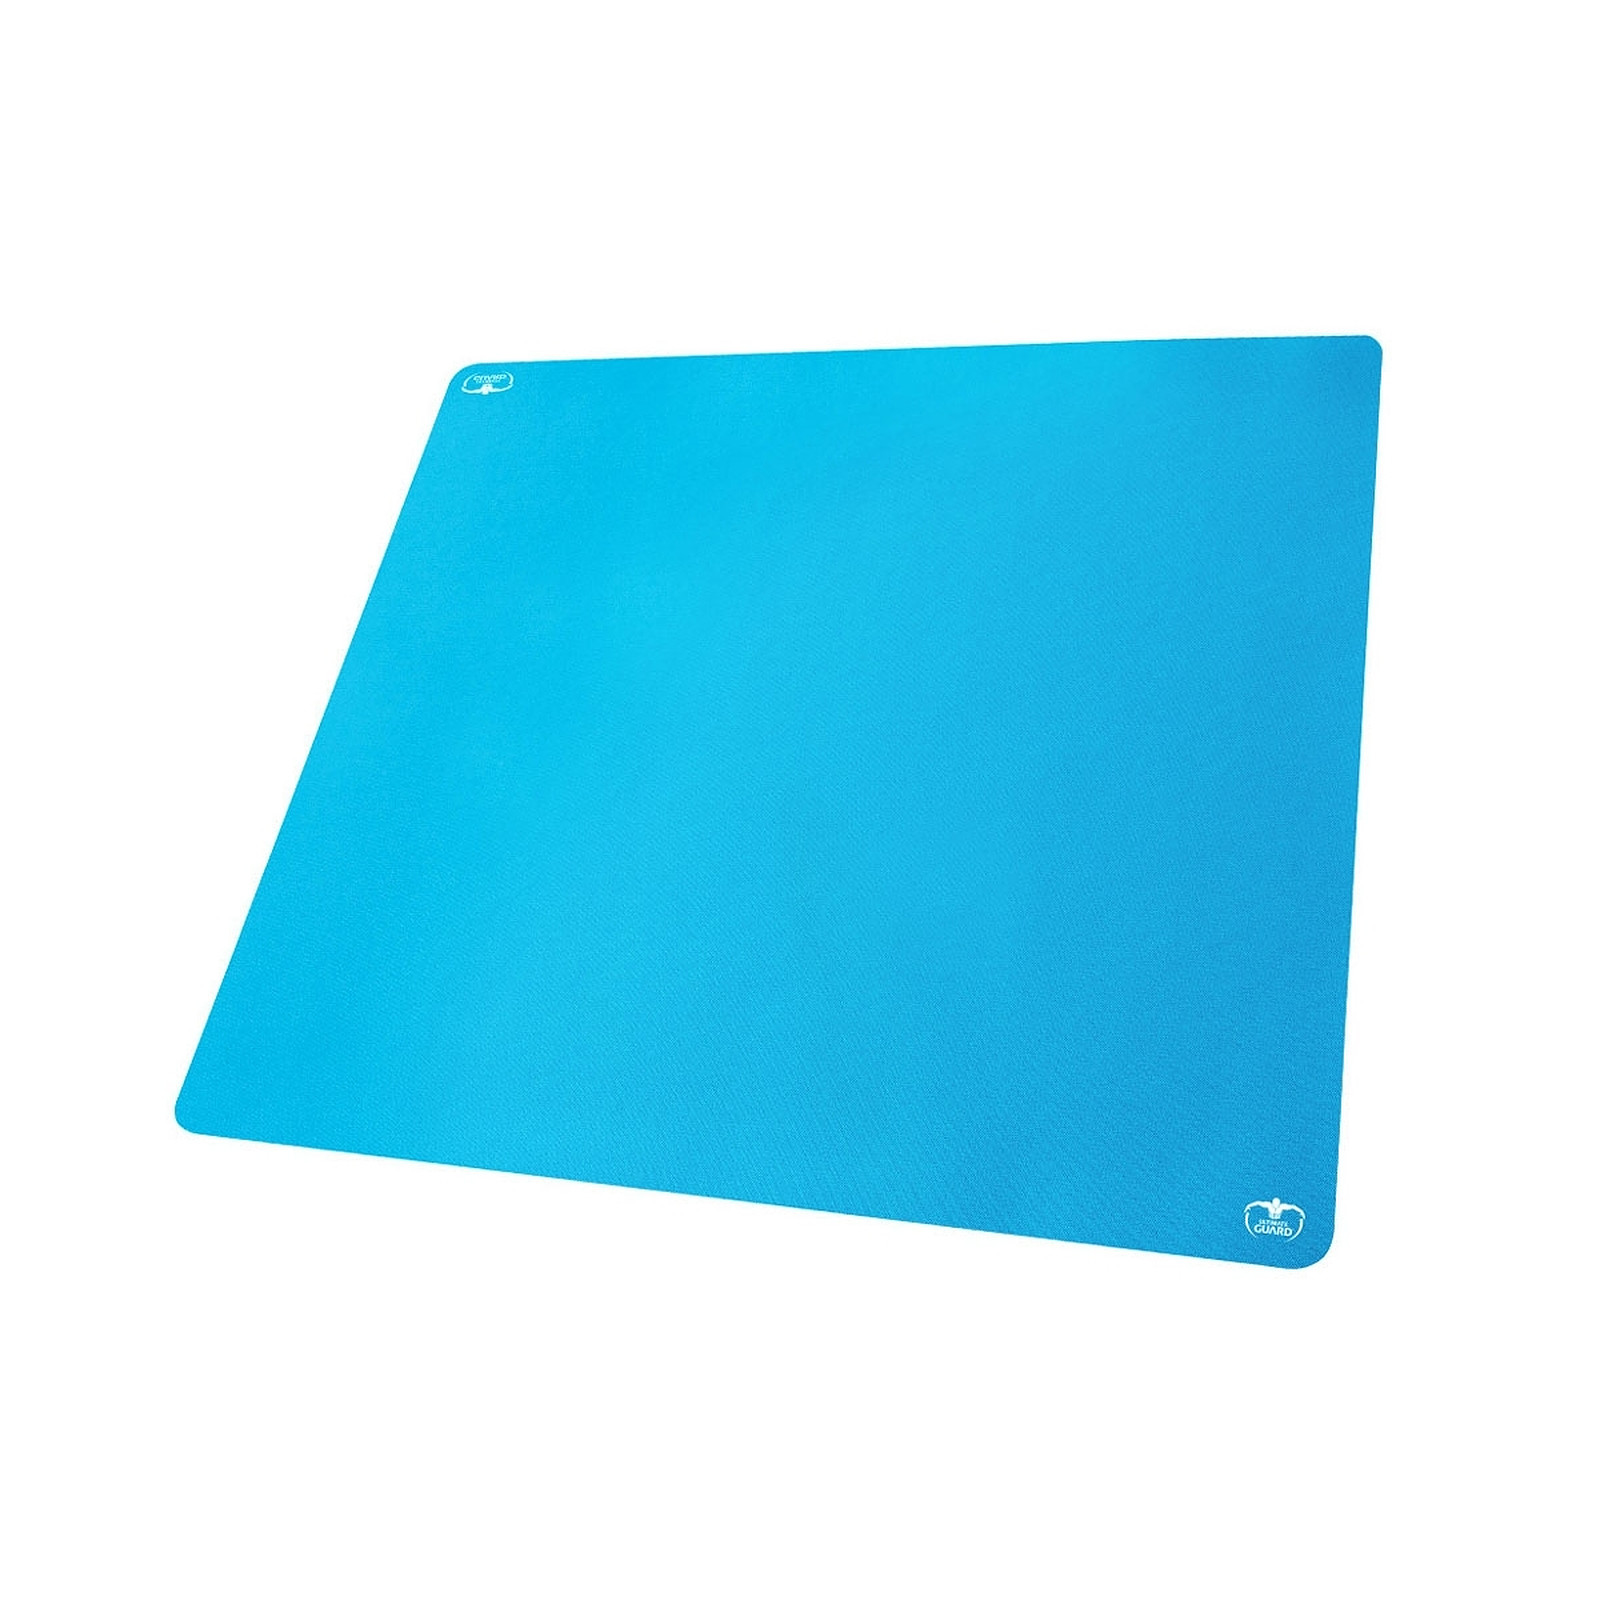 Ultimate Guard - Tapis de jeu 60 Monochrome Bleu Clair 61 x 61 cm - Accessoire jeux Ultimate Guard